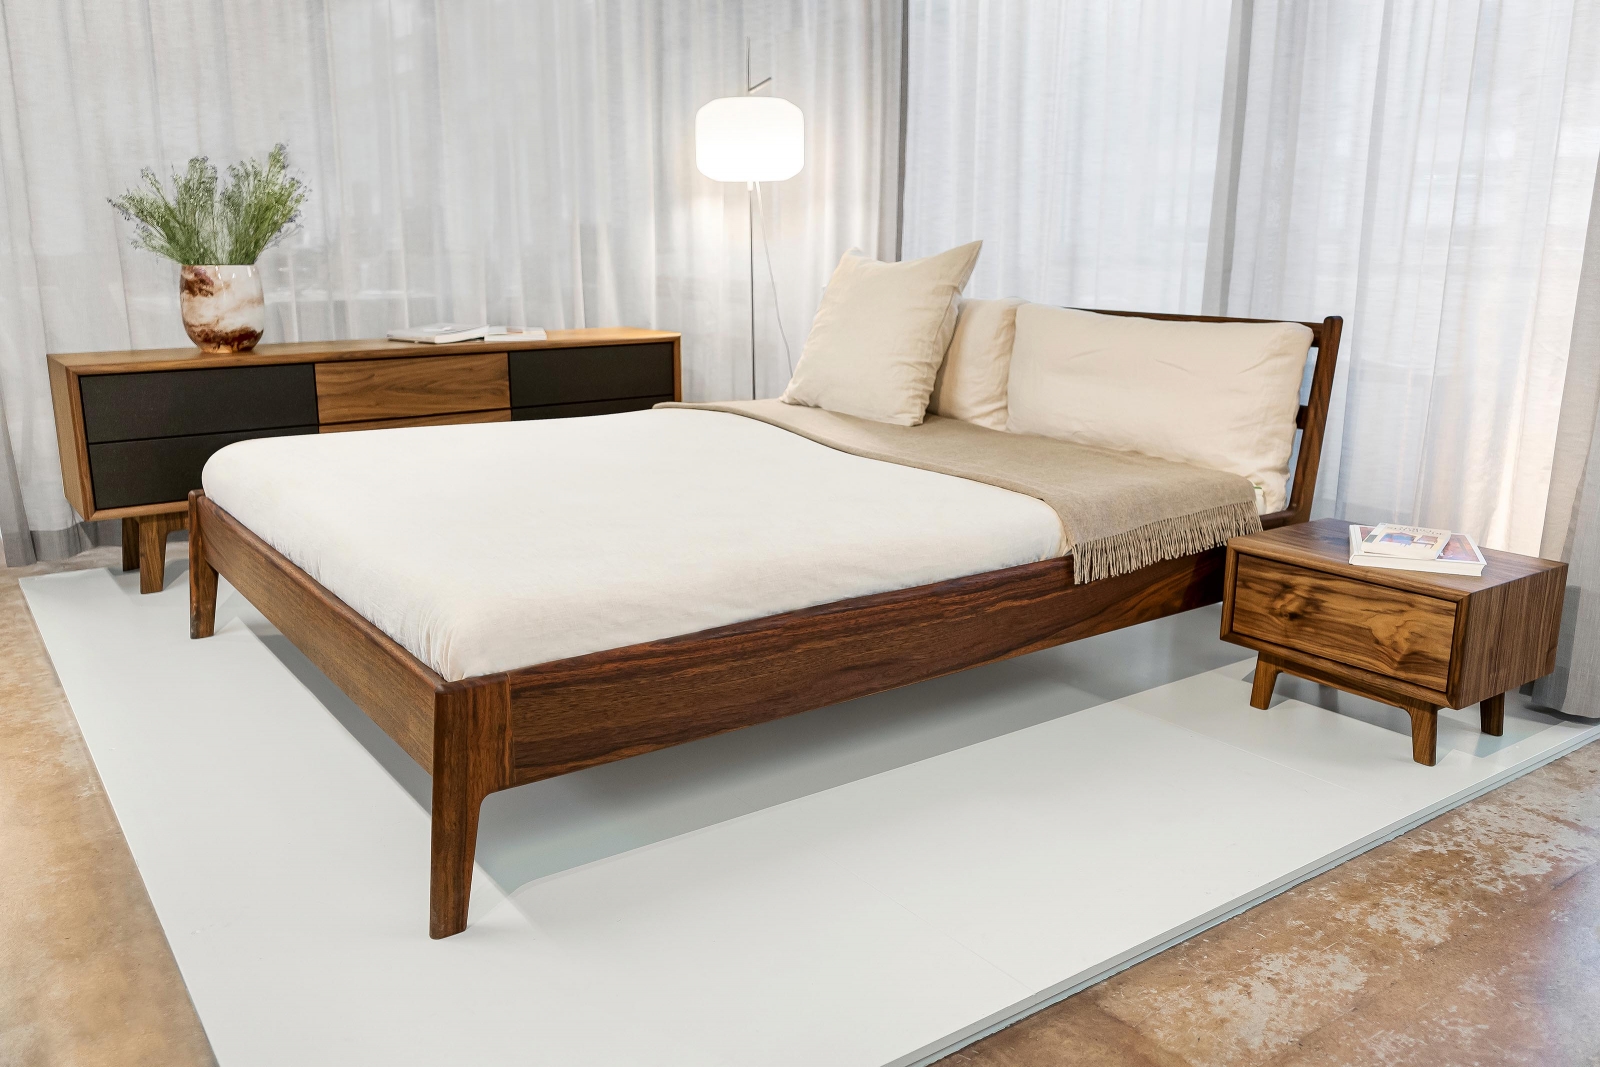 Bett «Tina» ist der neuste Entwurf des CEO Samuel Blaser, der bereits während seiner Lehrzeit begann, Möbel zu designen.